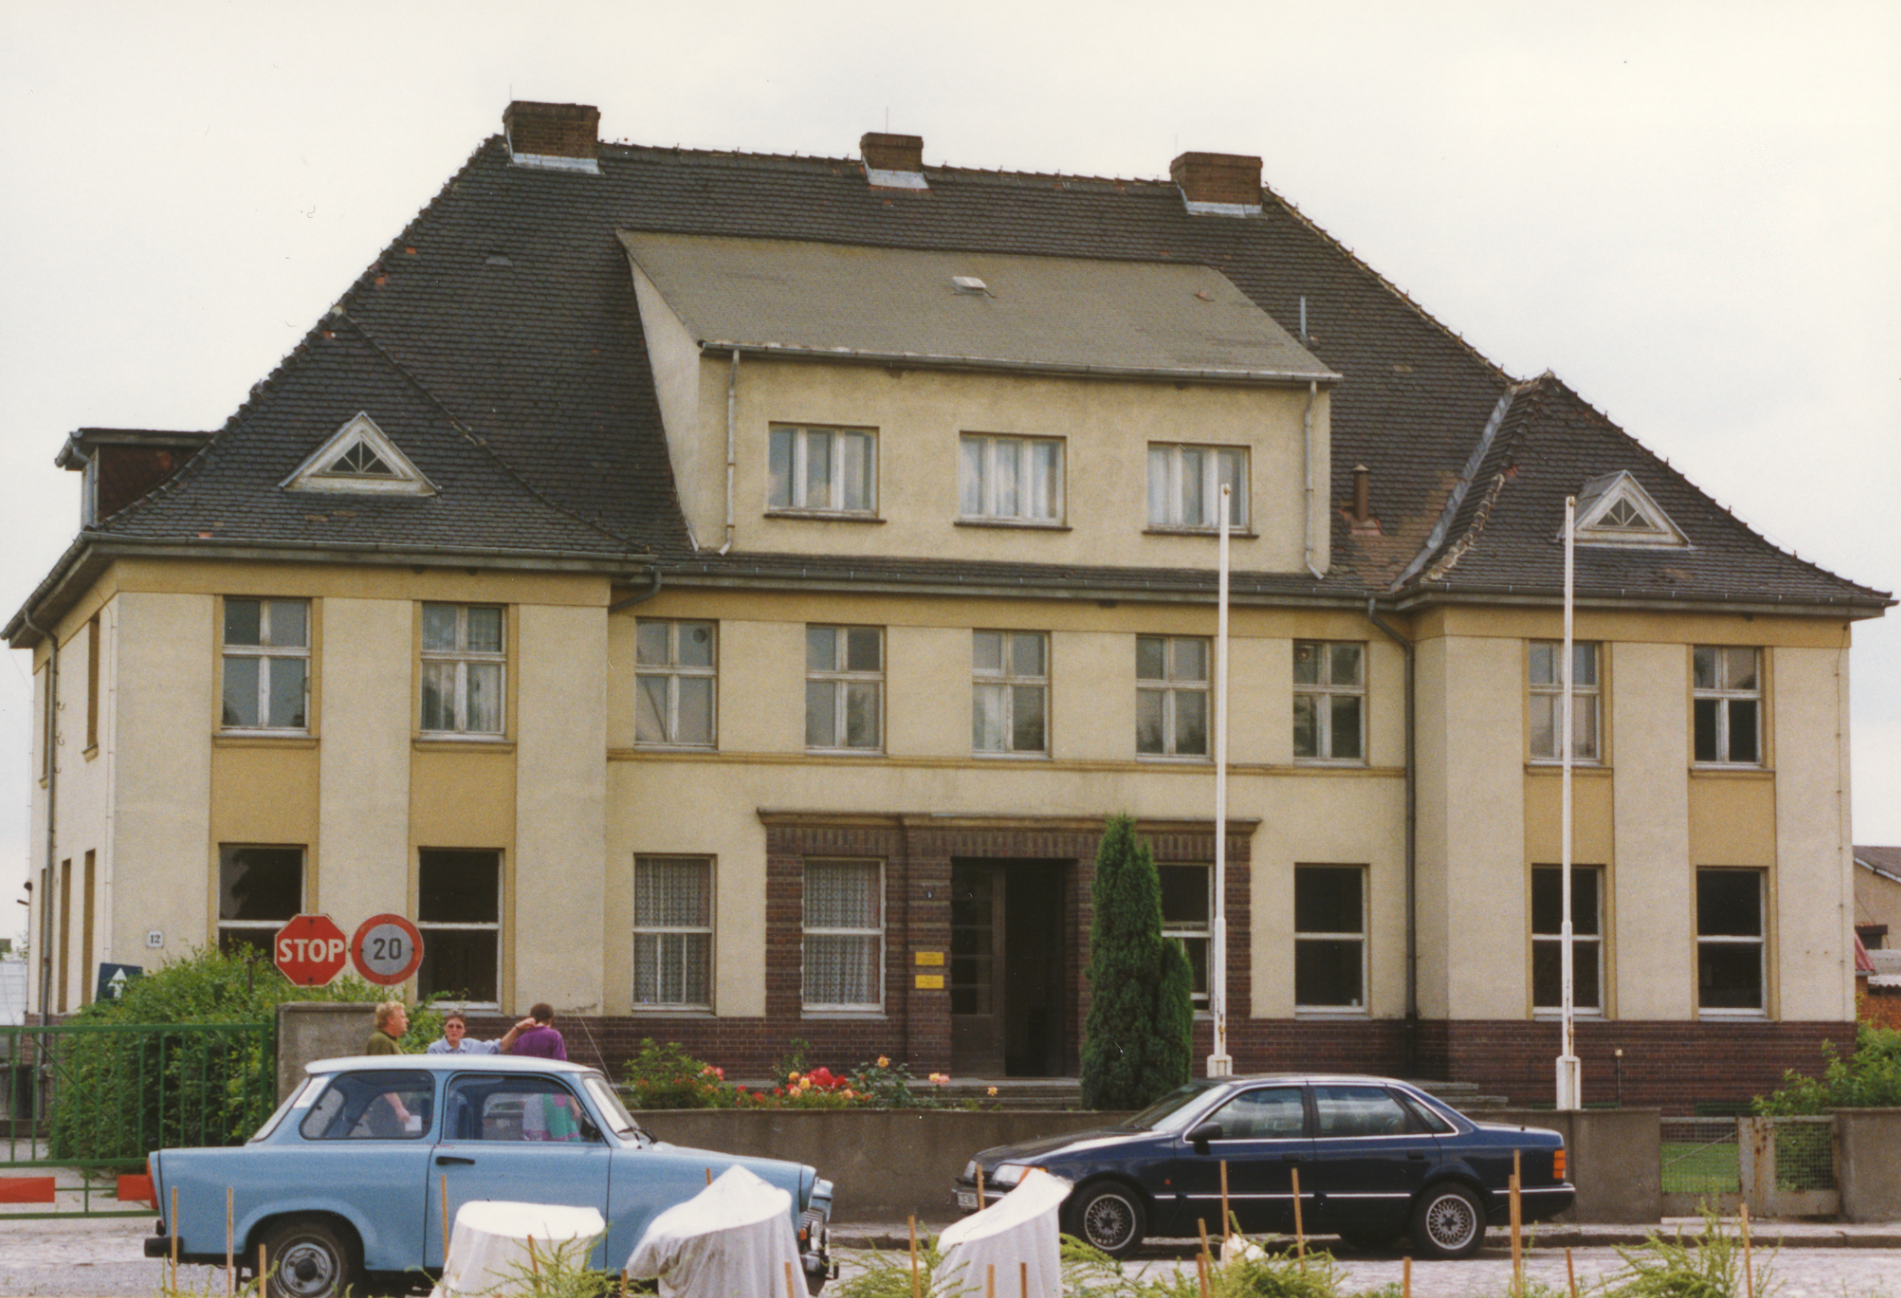 Istituto per il miglioramento genetico dei vegetali a Klein Wanzleben, fondato nel 1930, oggi edificio amministrativo della stazione di breeding